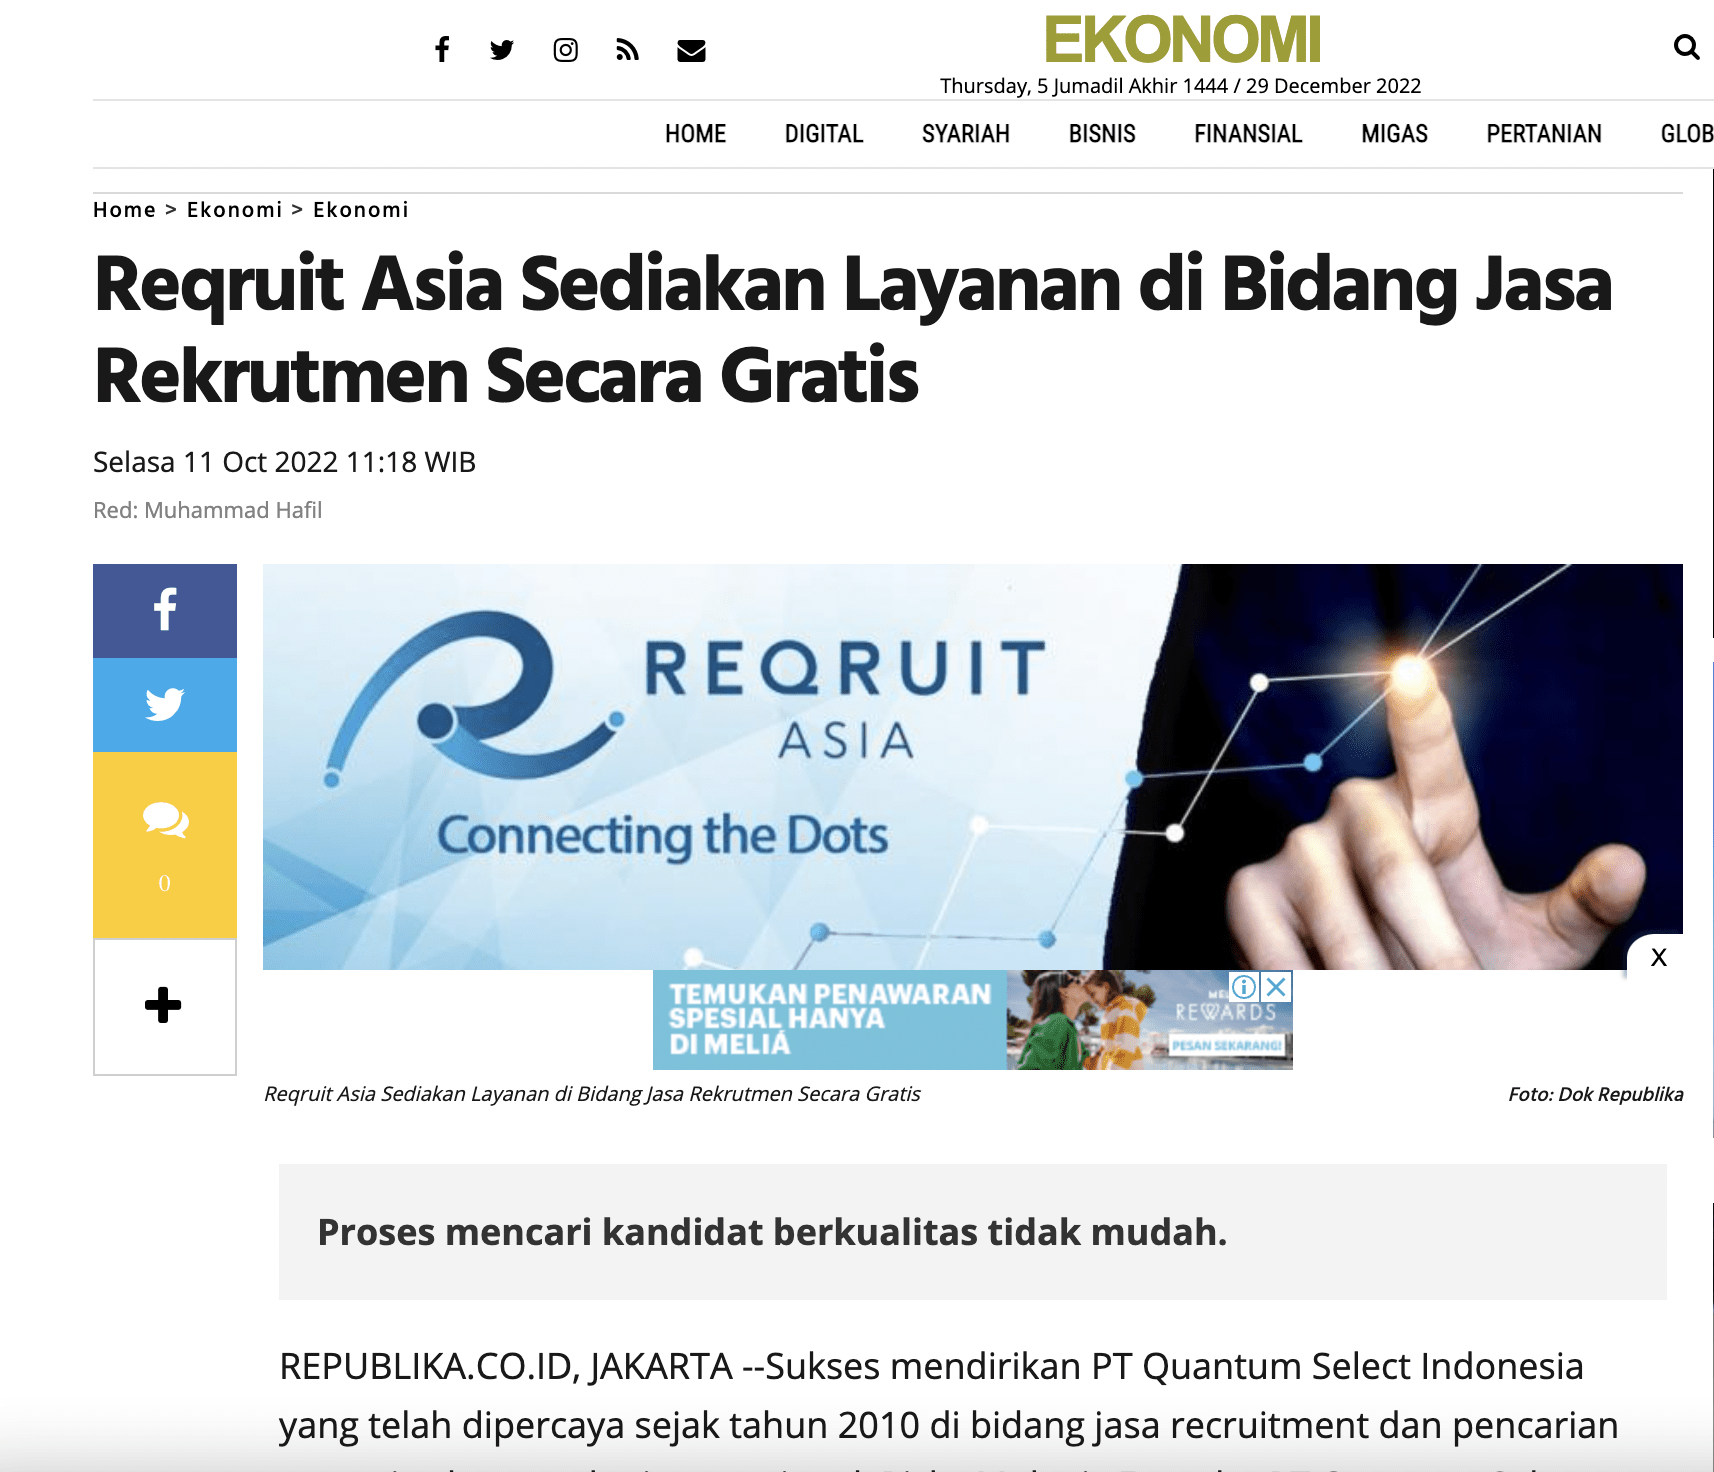 Reqruit Asia Sediakan Layanan di Bidang Jasa Rekrutmen Secara Gratis